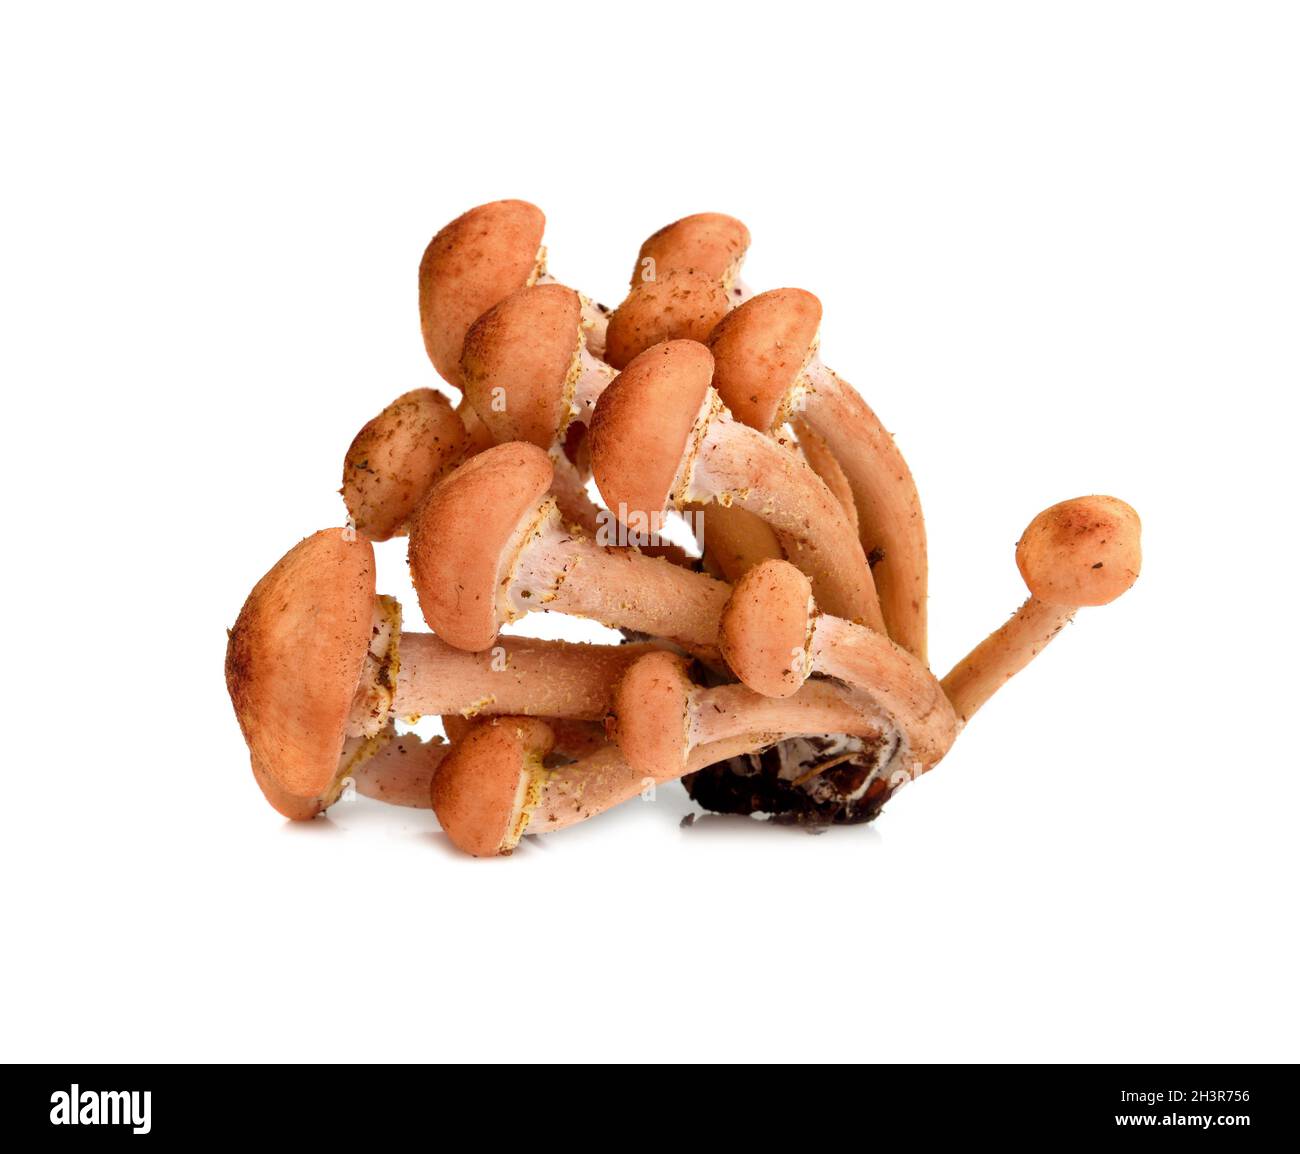 Wild autumn mushrooms Stock Photo